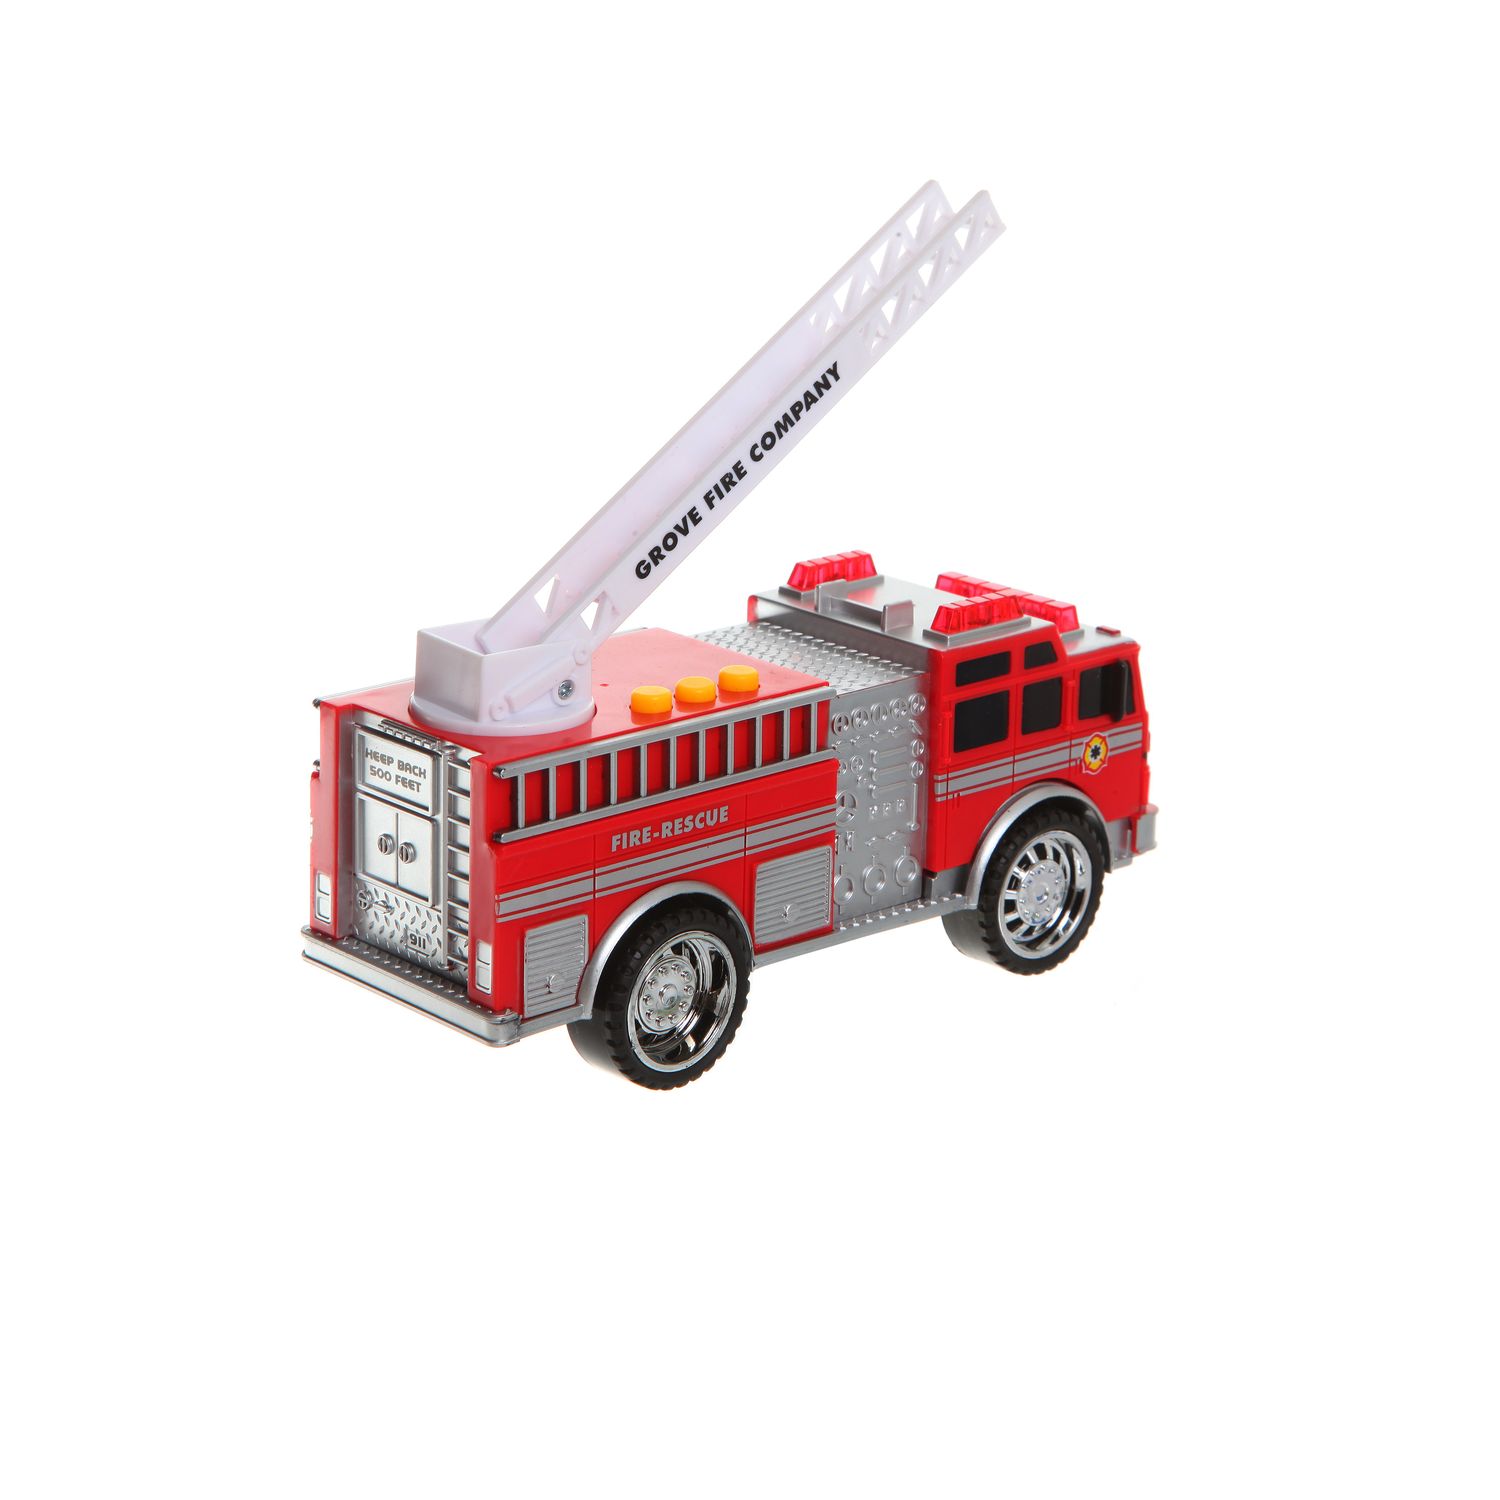 Маленькая пожарная машинка. Конструктор Boyuan Toys 8755 пожарная машина. Конструктор винтовой пожарная машина 95эл. (Свет, звук) 3202-8. Пожарная машина 5110dks. 5392 Пожарная машина красная Technok Toys.